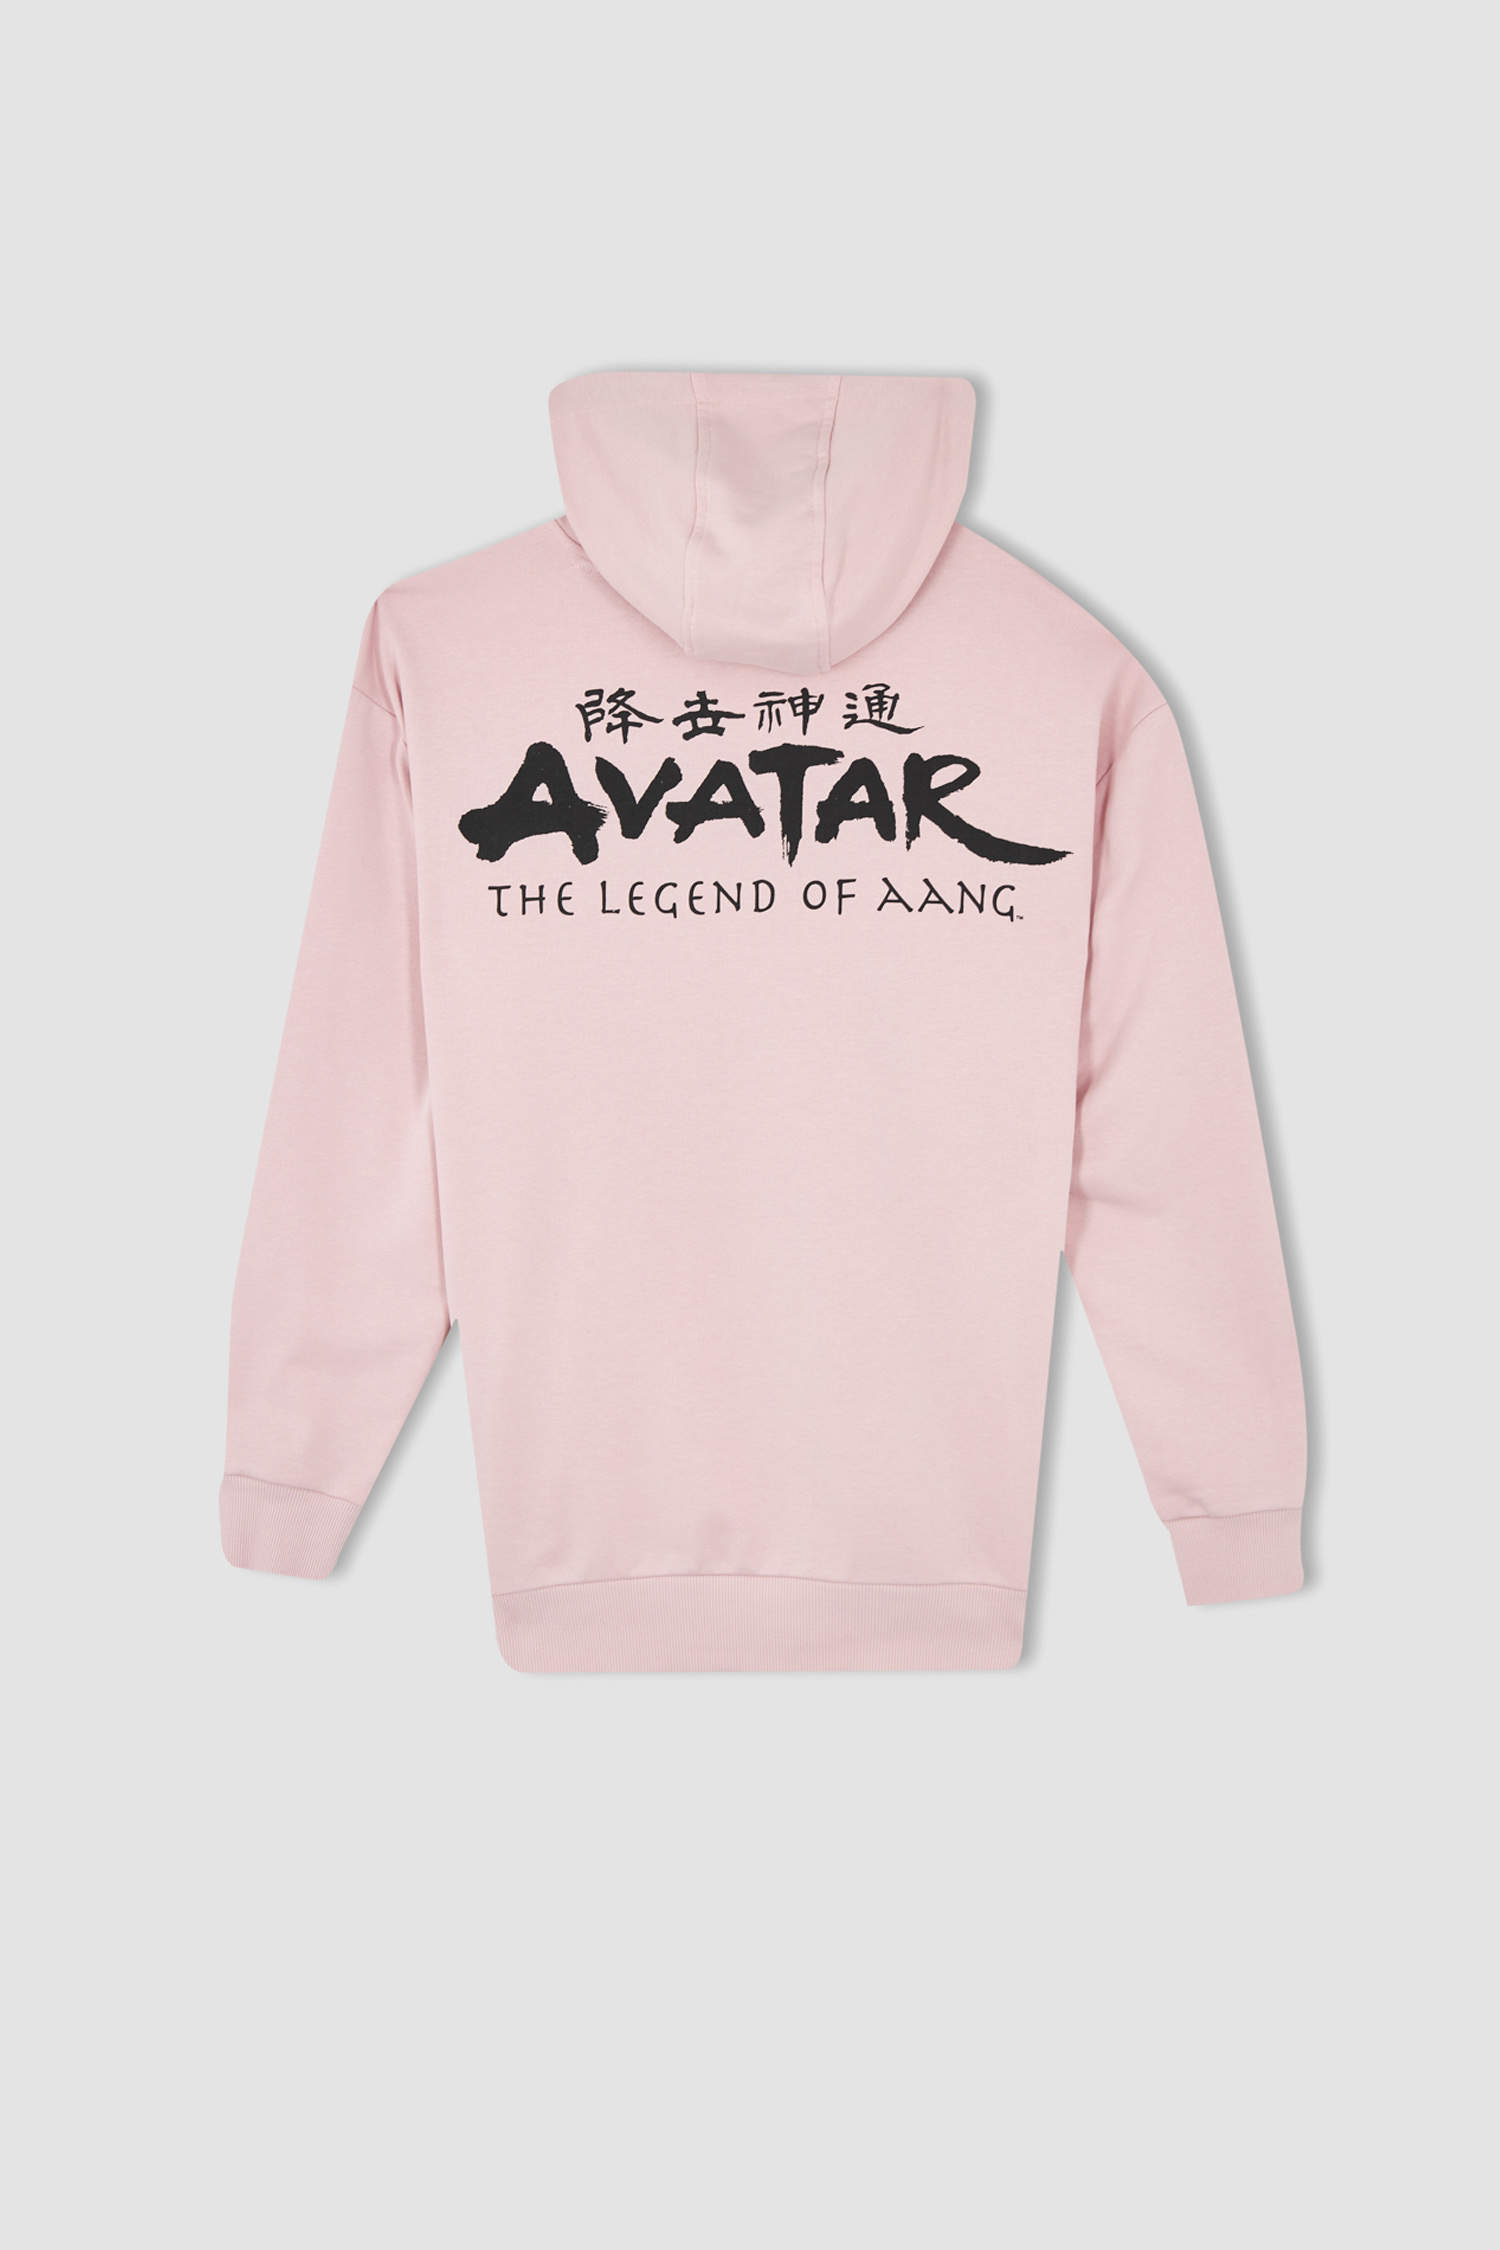 Defacto Coool Avatar The Last Airbender Oversize Fit Kapüşonlu Sweatshirt. 4